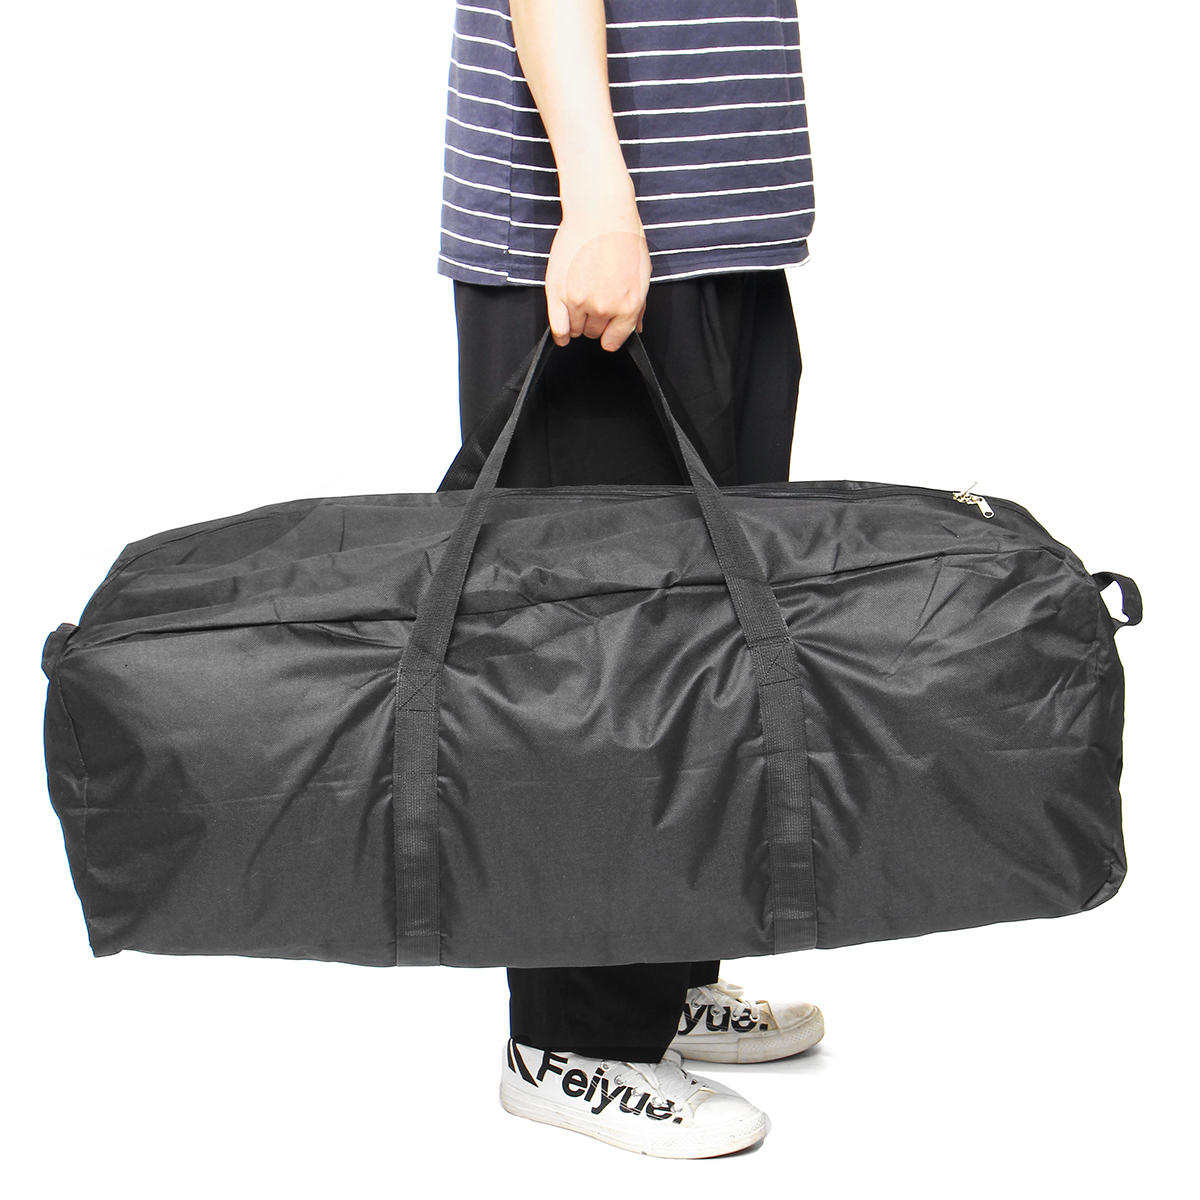 المحمولة قابلة للطي ضد للماء حقيبة التخزين السفر في الهواء الطلق المشي لمسافات طويلة حقائب رياضية حقائب- S / M / L